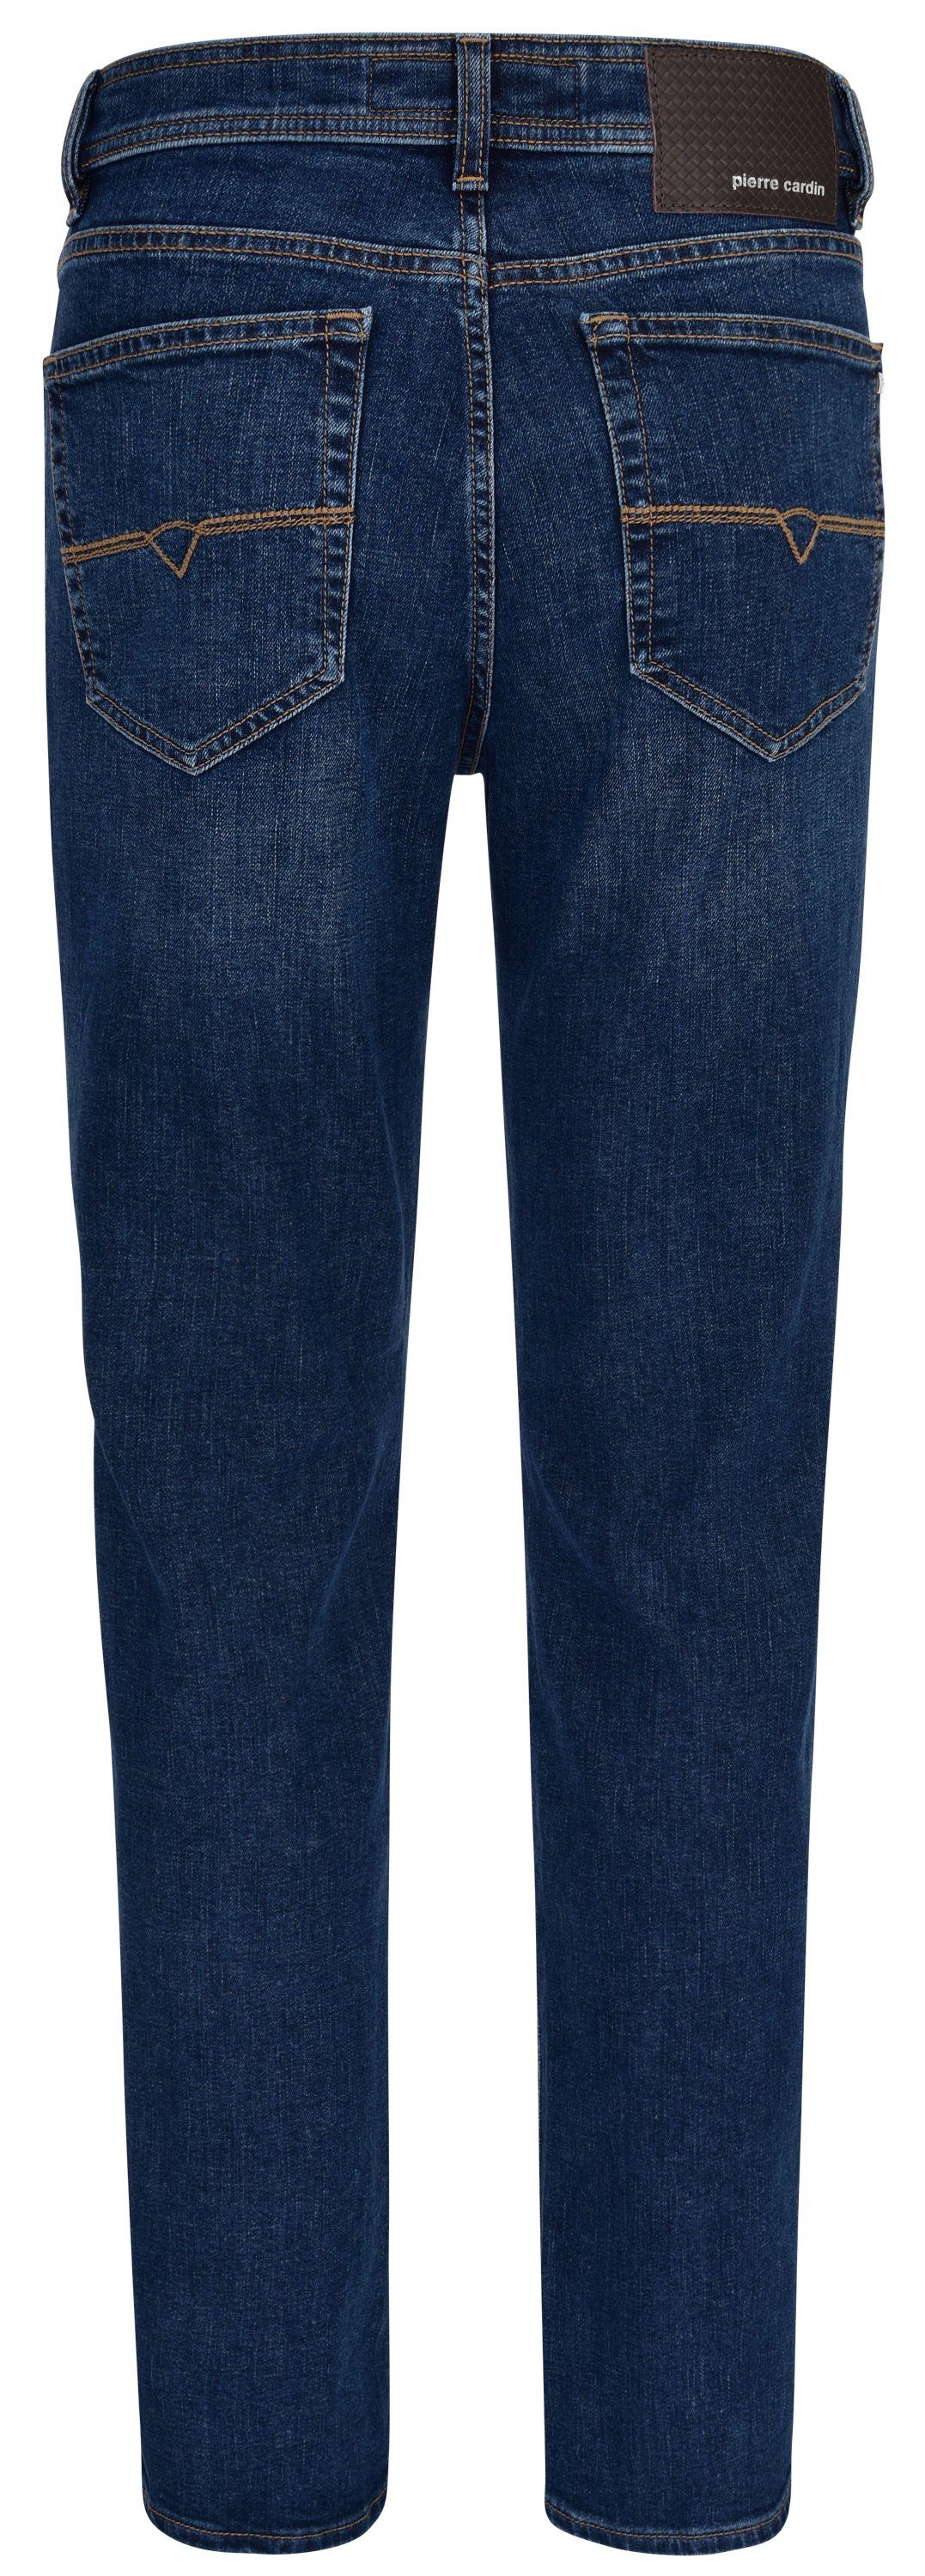 Pierre Cardin 5-Pocket-Jeans blue 7350.07 3231 CARDIN EDITION DENIM - PIERRE DIJON